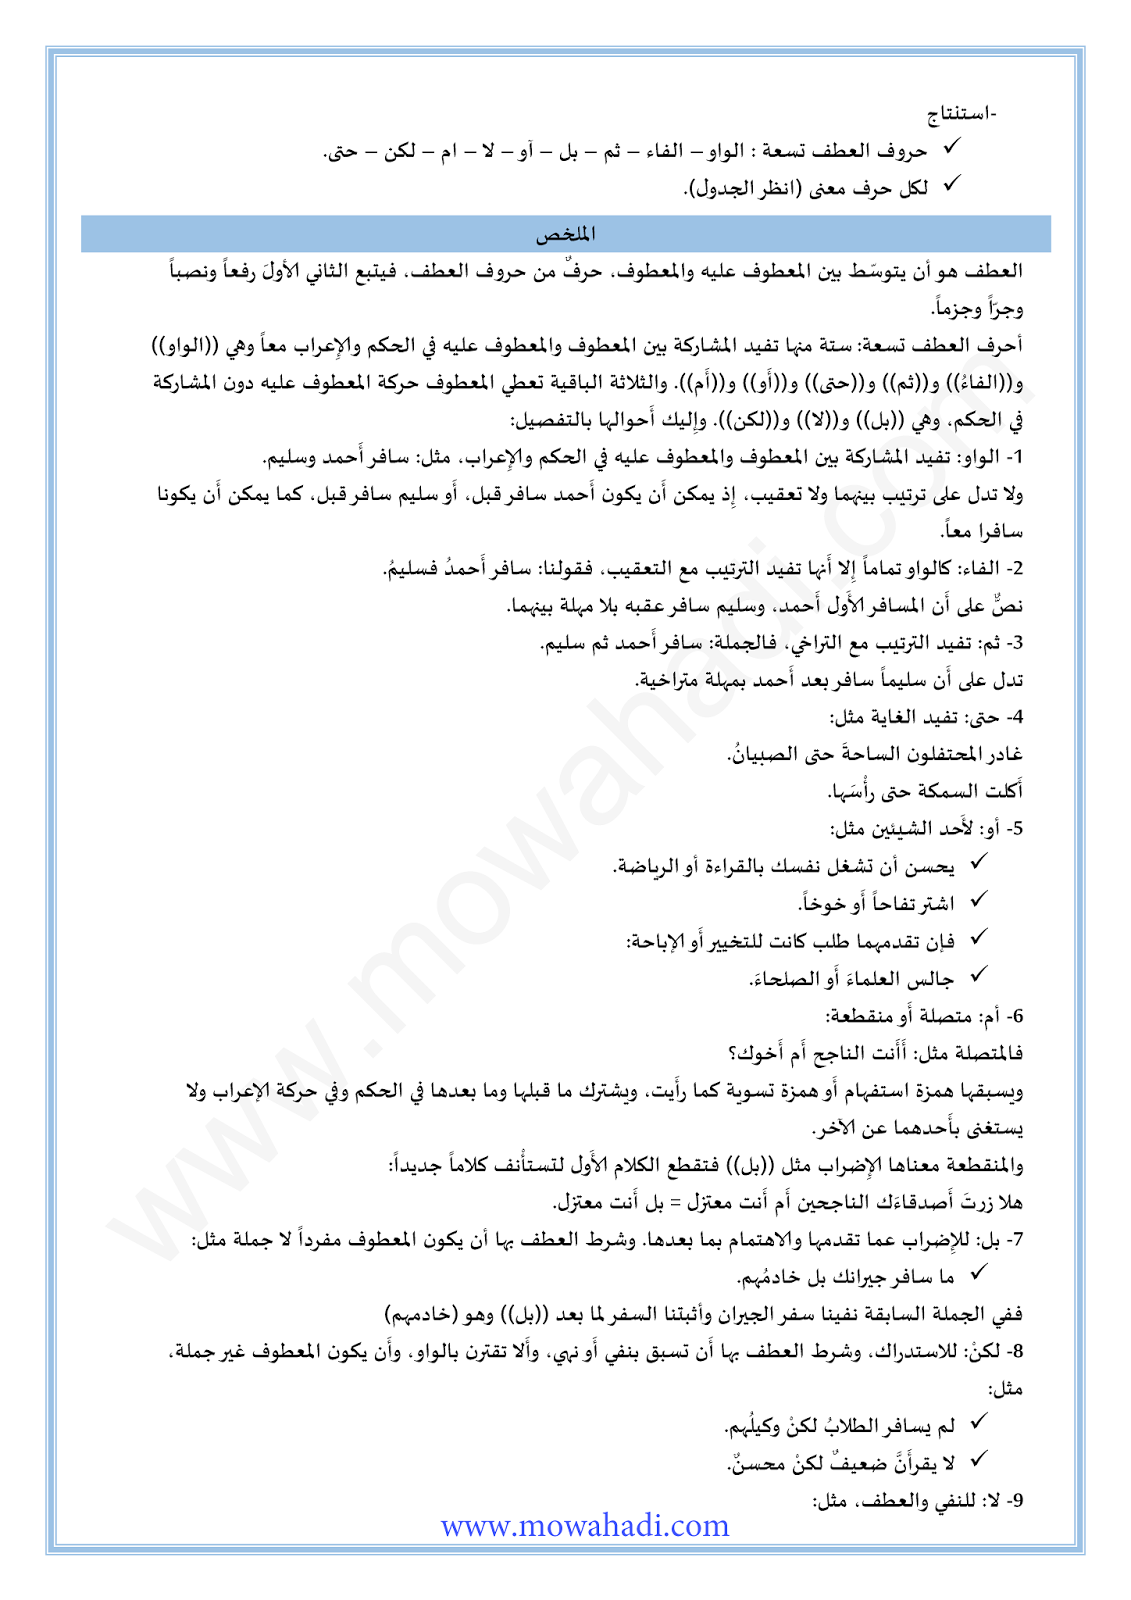 الدرس اللغوي العطف للسنة الثانية اعدادي في مادة اللغة العربية 18-cours-loghawi2_002